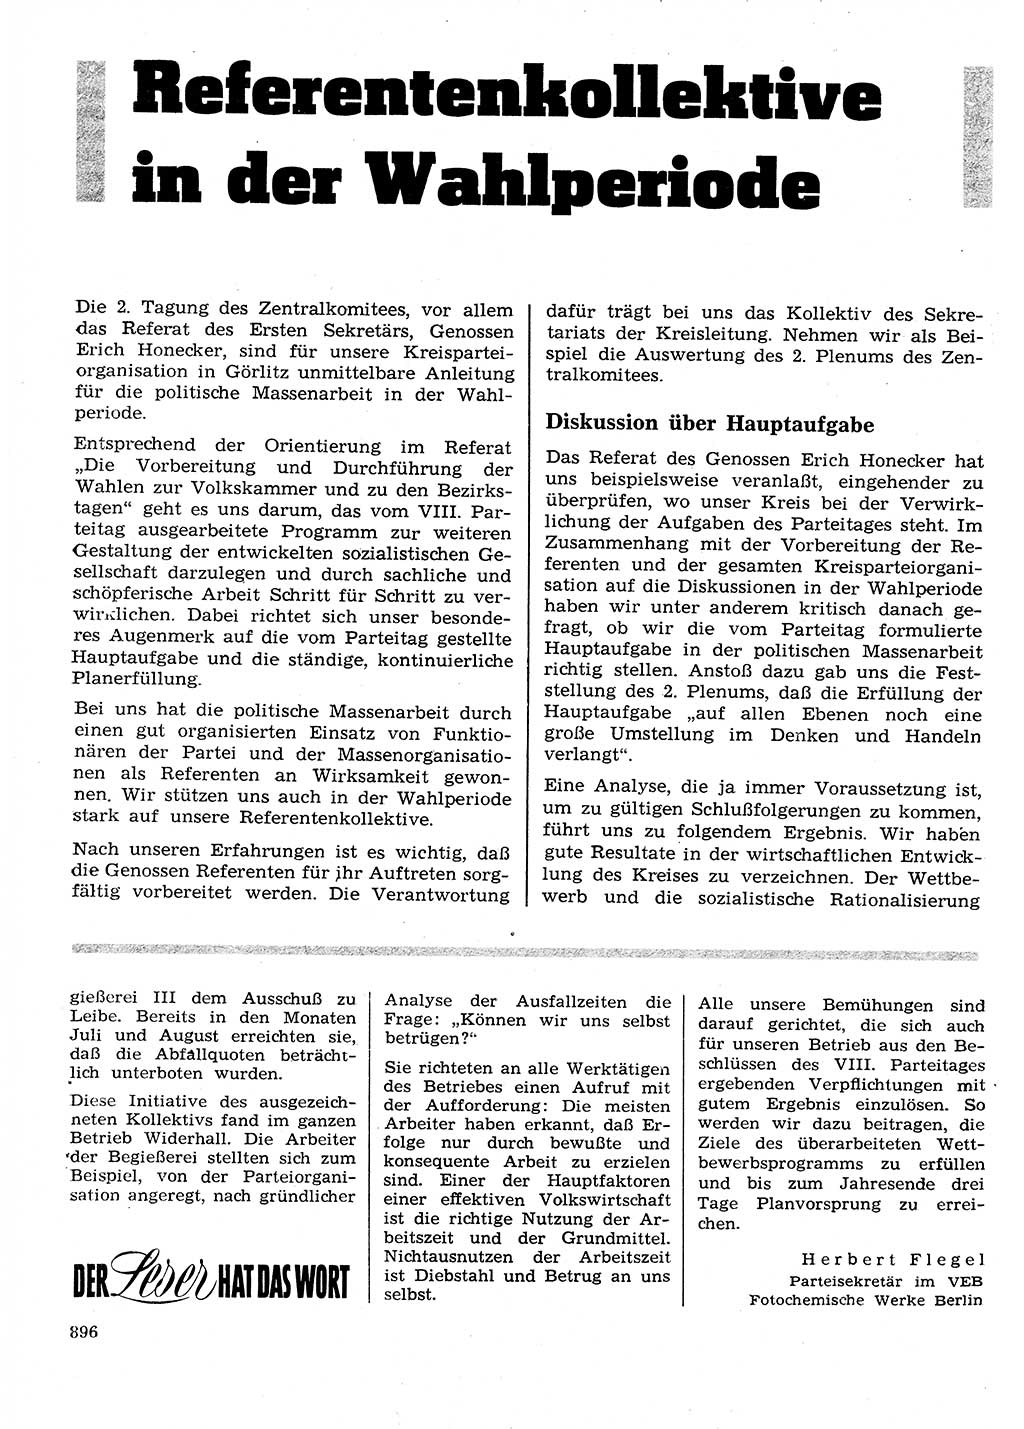 Neuer Weg (NW), Organ des Zentralkomitees (ZK) der SED (Sozialistische Einheitspartei Deutschlands) für Fragen des Parteilebens, 26. Jahrgang [Deutsche Demokratische Republik (DDR)] 1971, Seite 896 (NW ZK SED DDR 1971, S. 896)